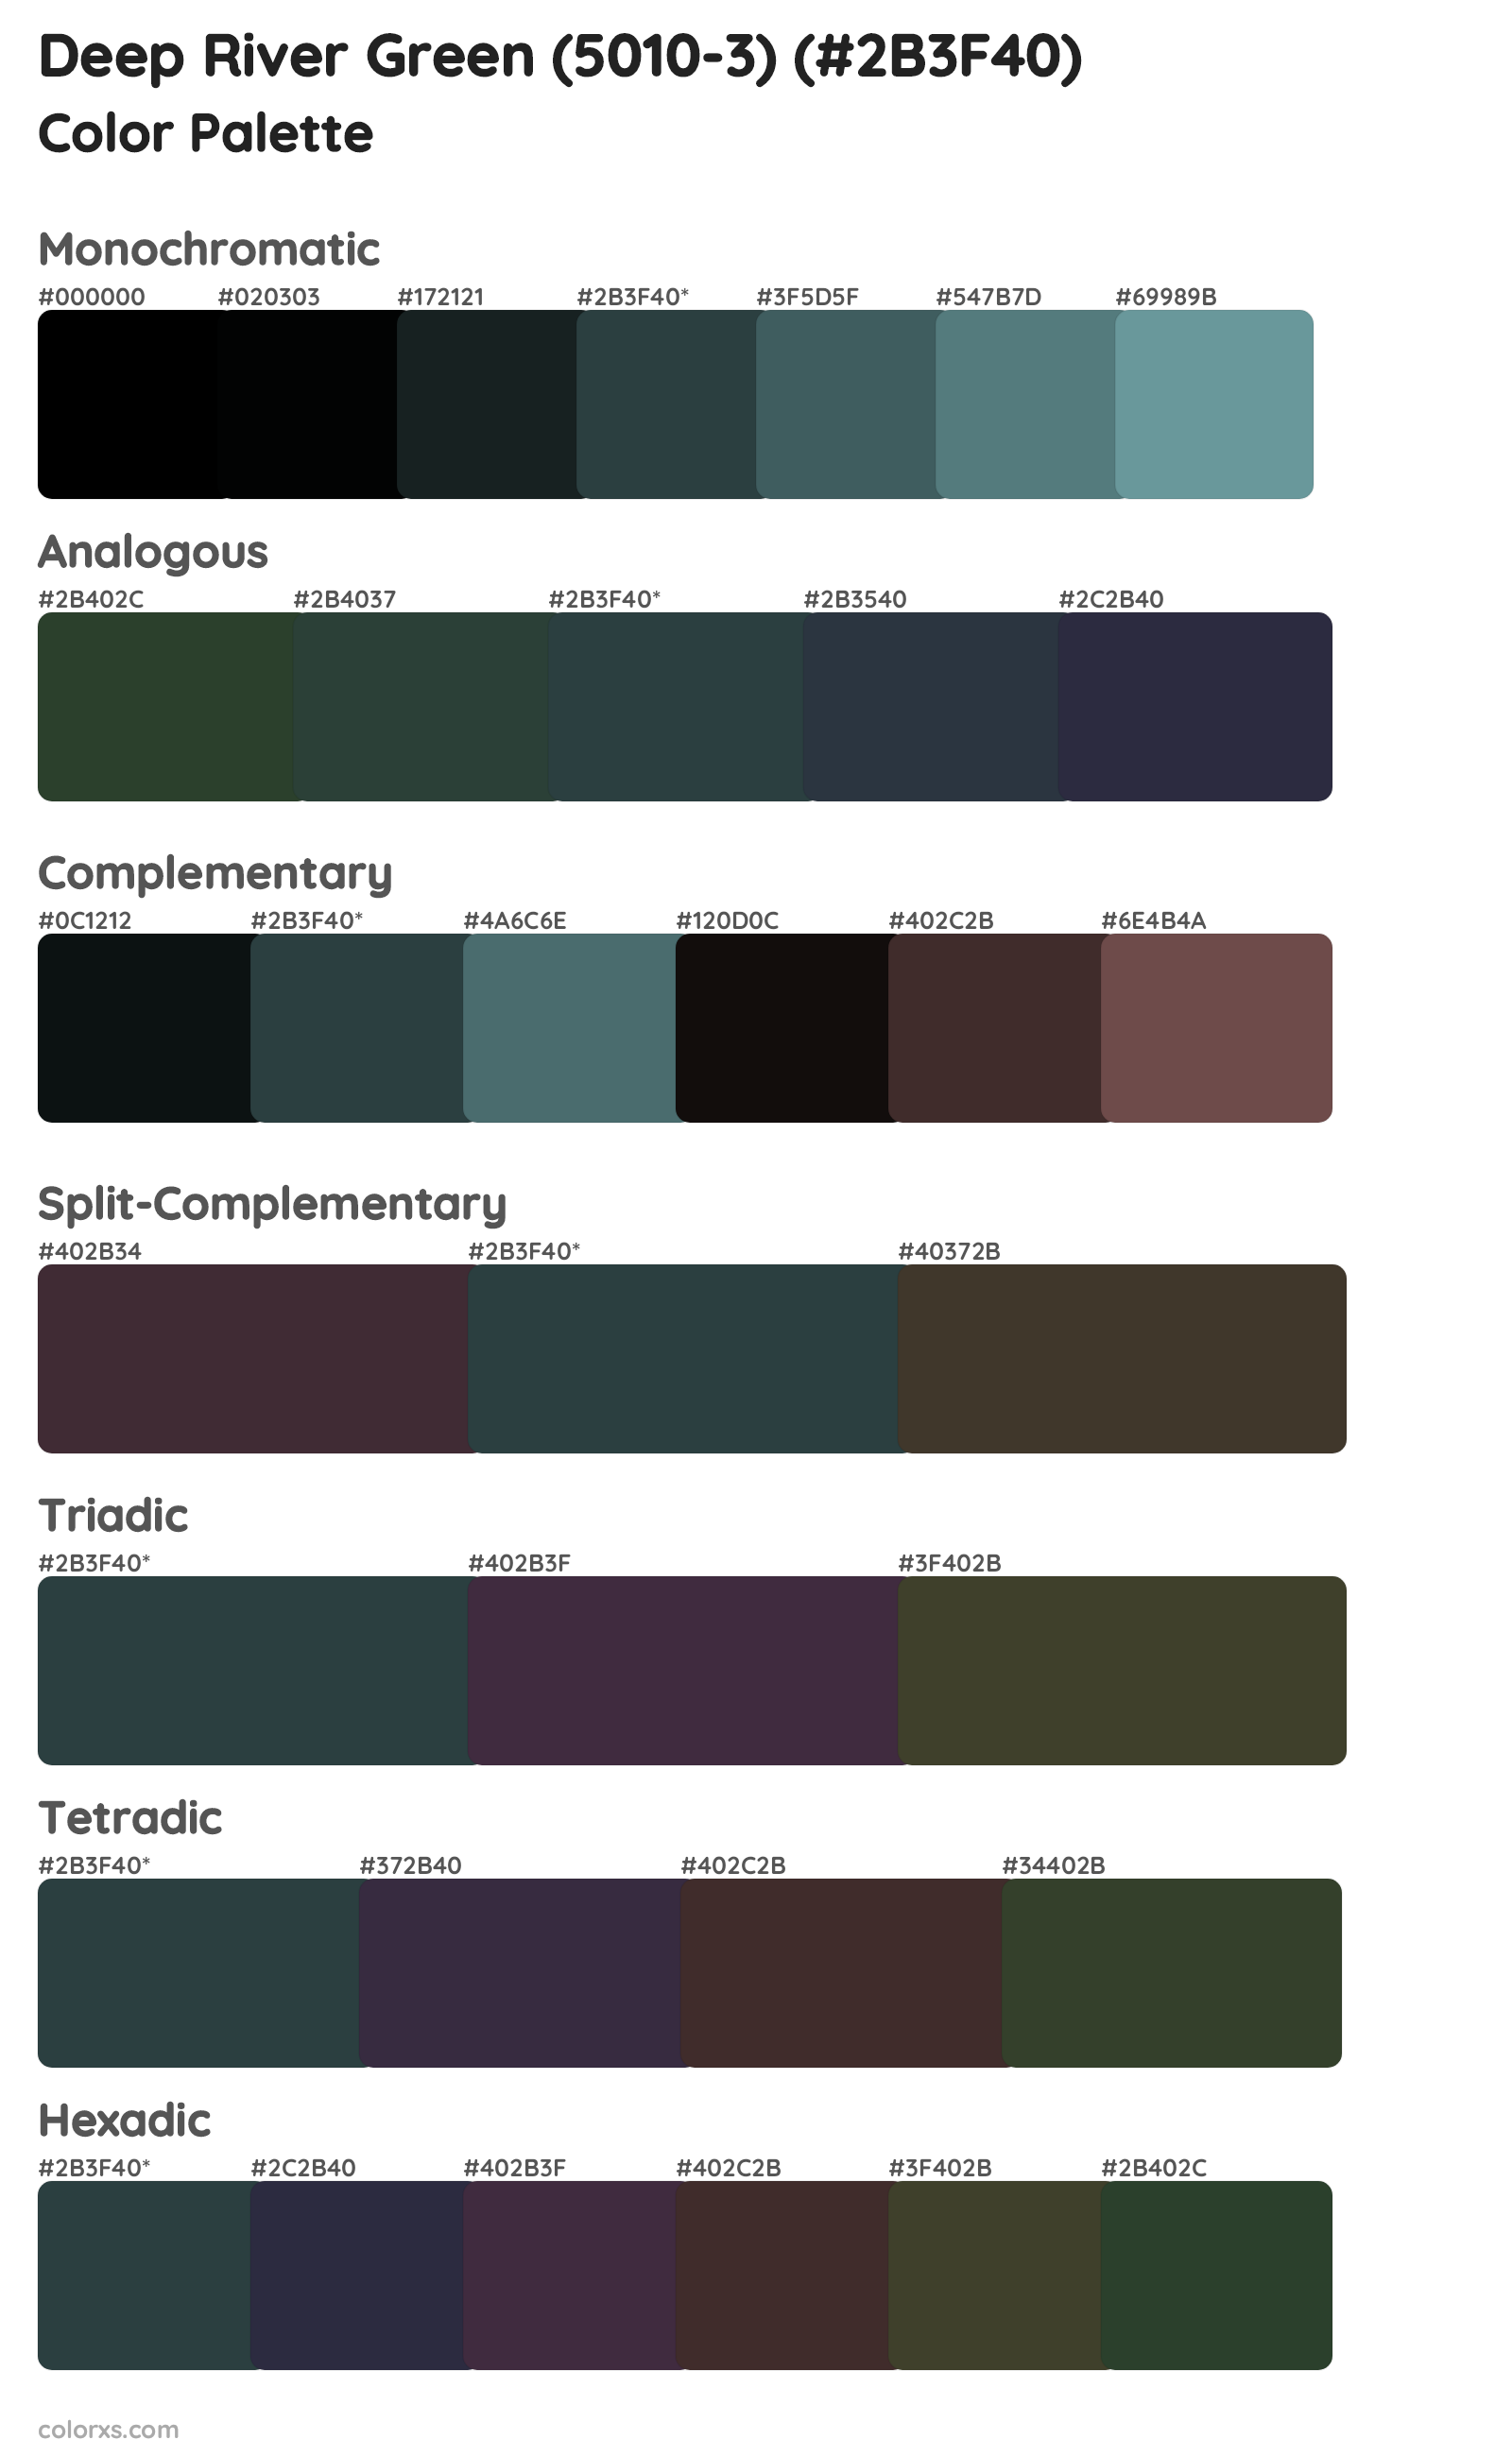 Deep River Green (5010-3) Color Scheme Palettes